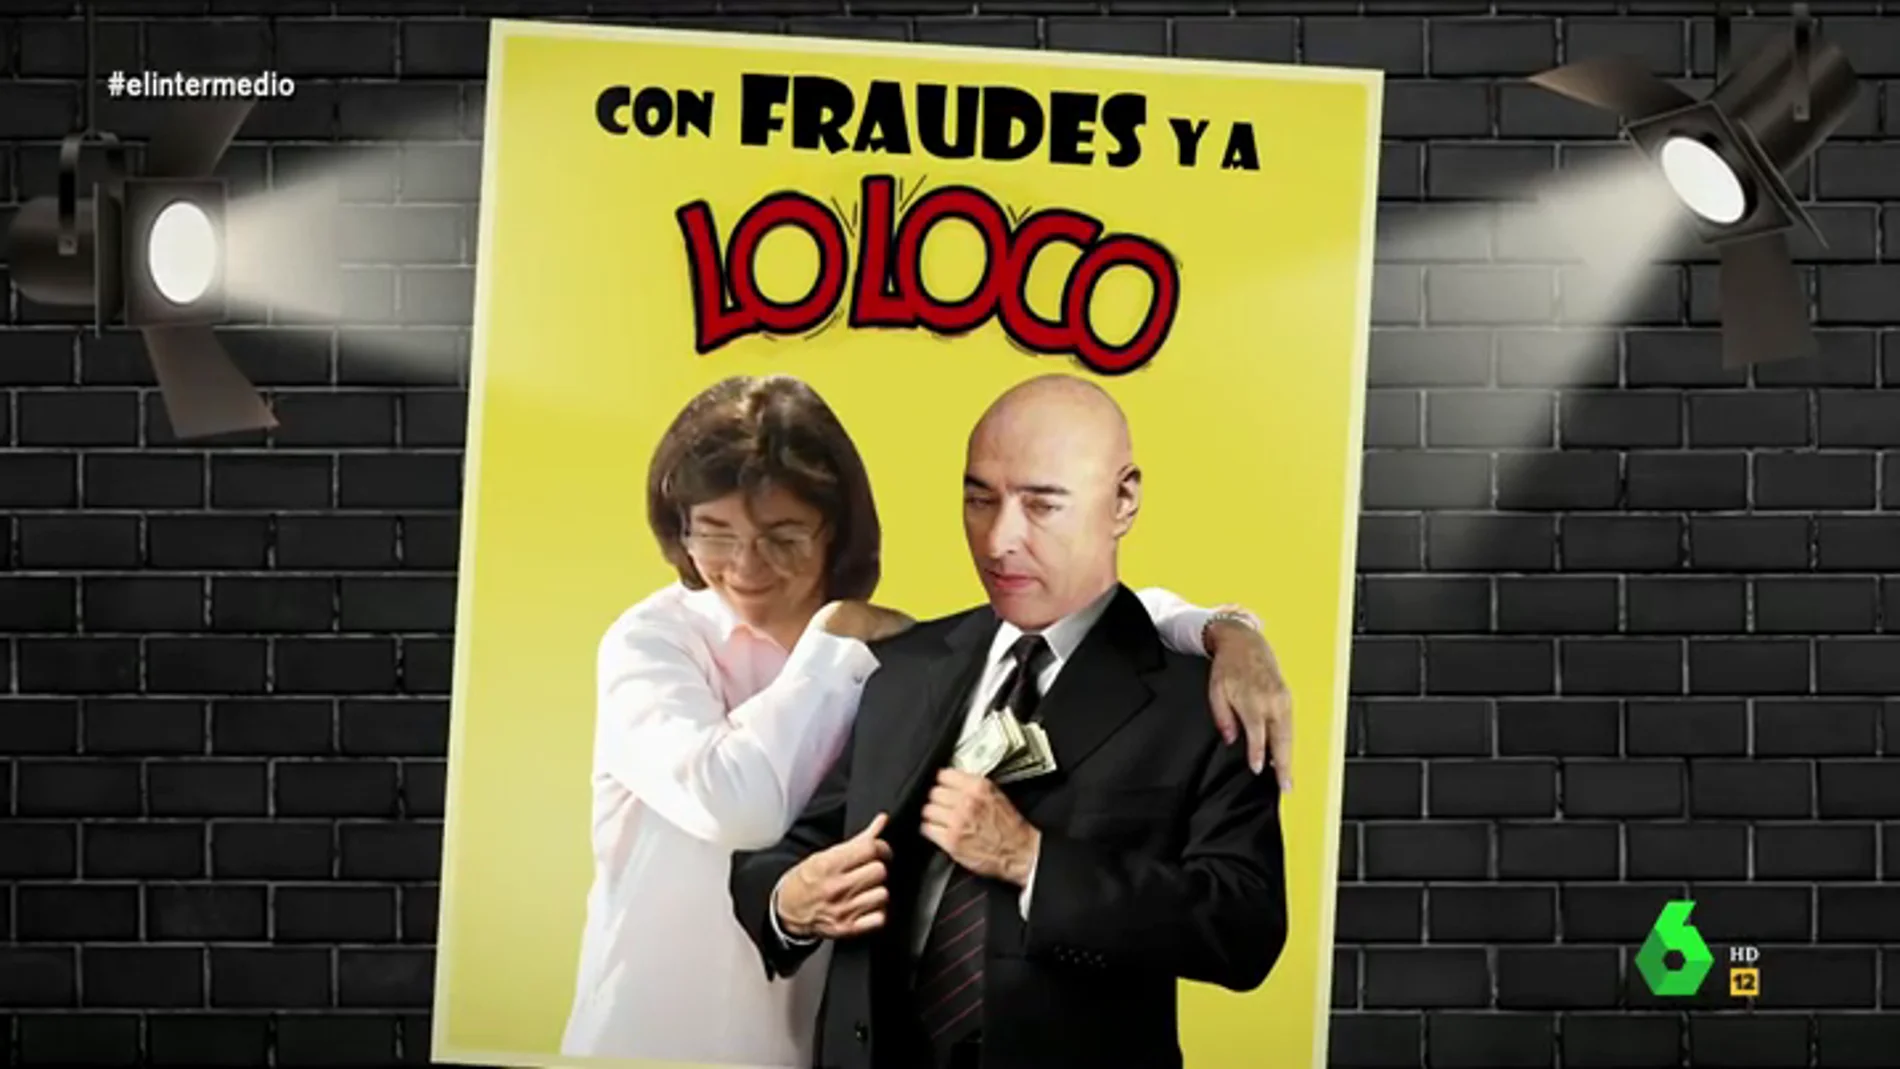 'Con fraudes y a lo loco', la historia de cómo la jefa Anticorrupción de Rajoy se enamoró de un "capo del fraude"